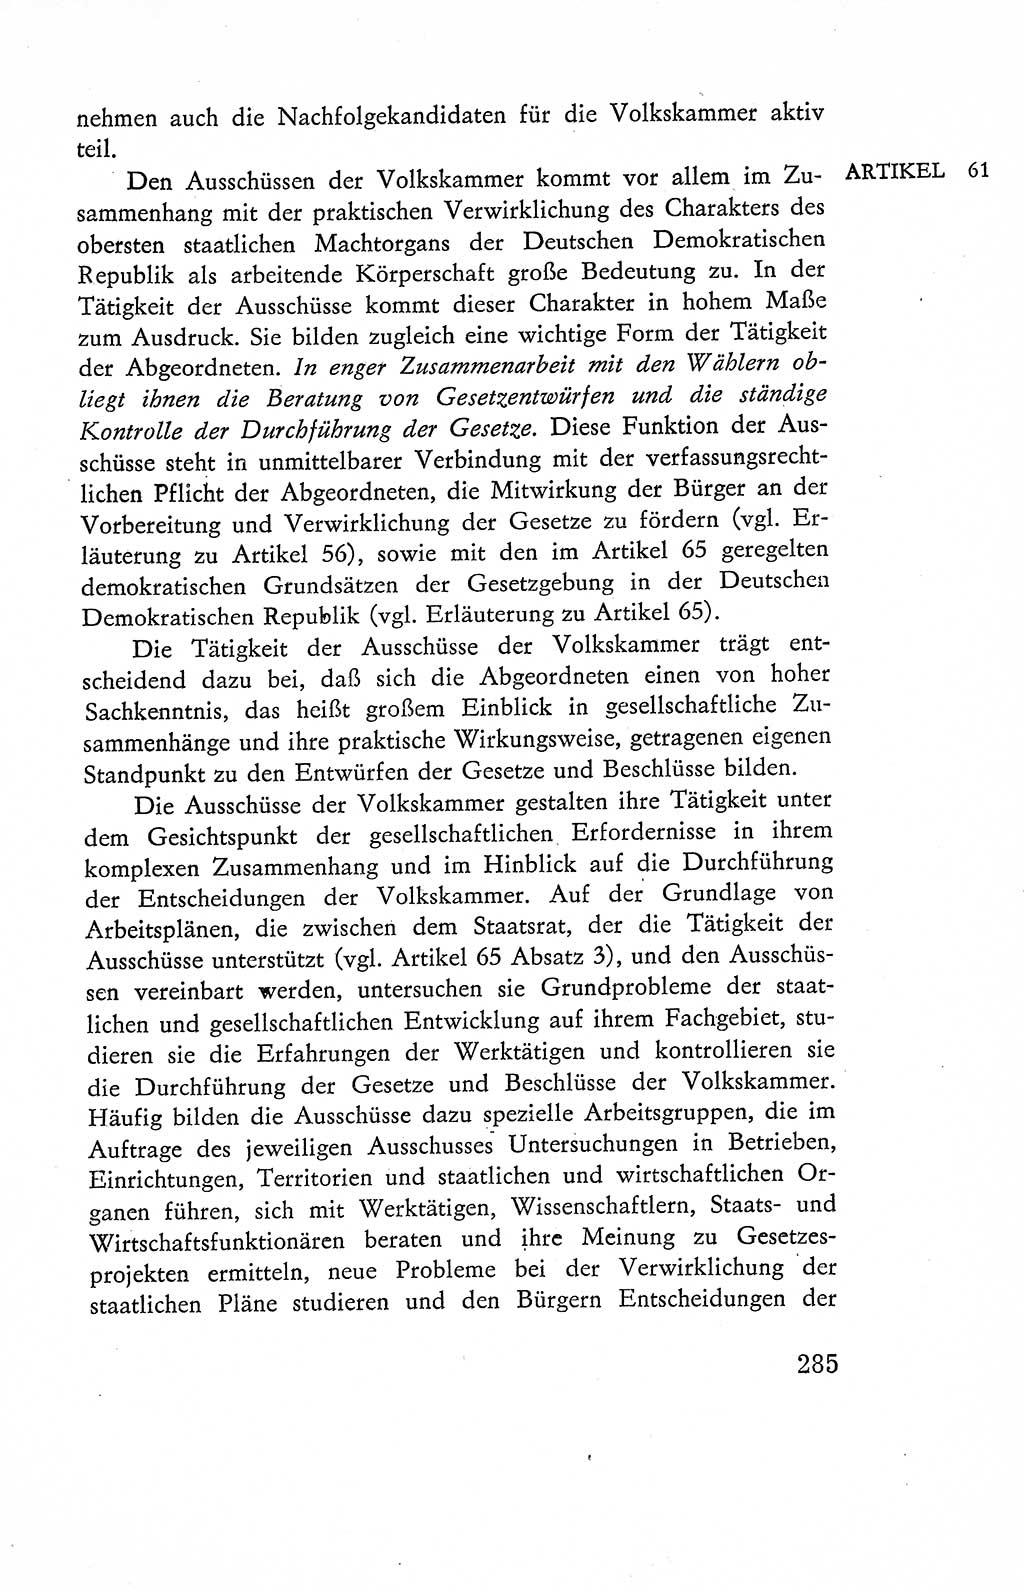 Verfassung der Deutschen Demokratischen Republik (DDR), Dokumente, Kommentar 1969, Band 2, Seite 285 (Verf. DDR Dok. Komm. 1969, Bd. 2, S. 285)